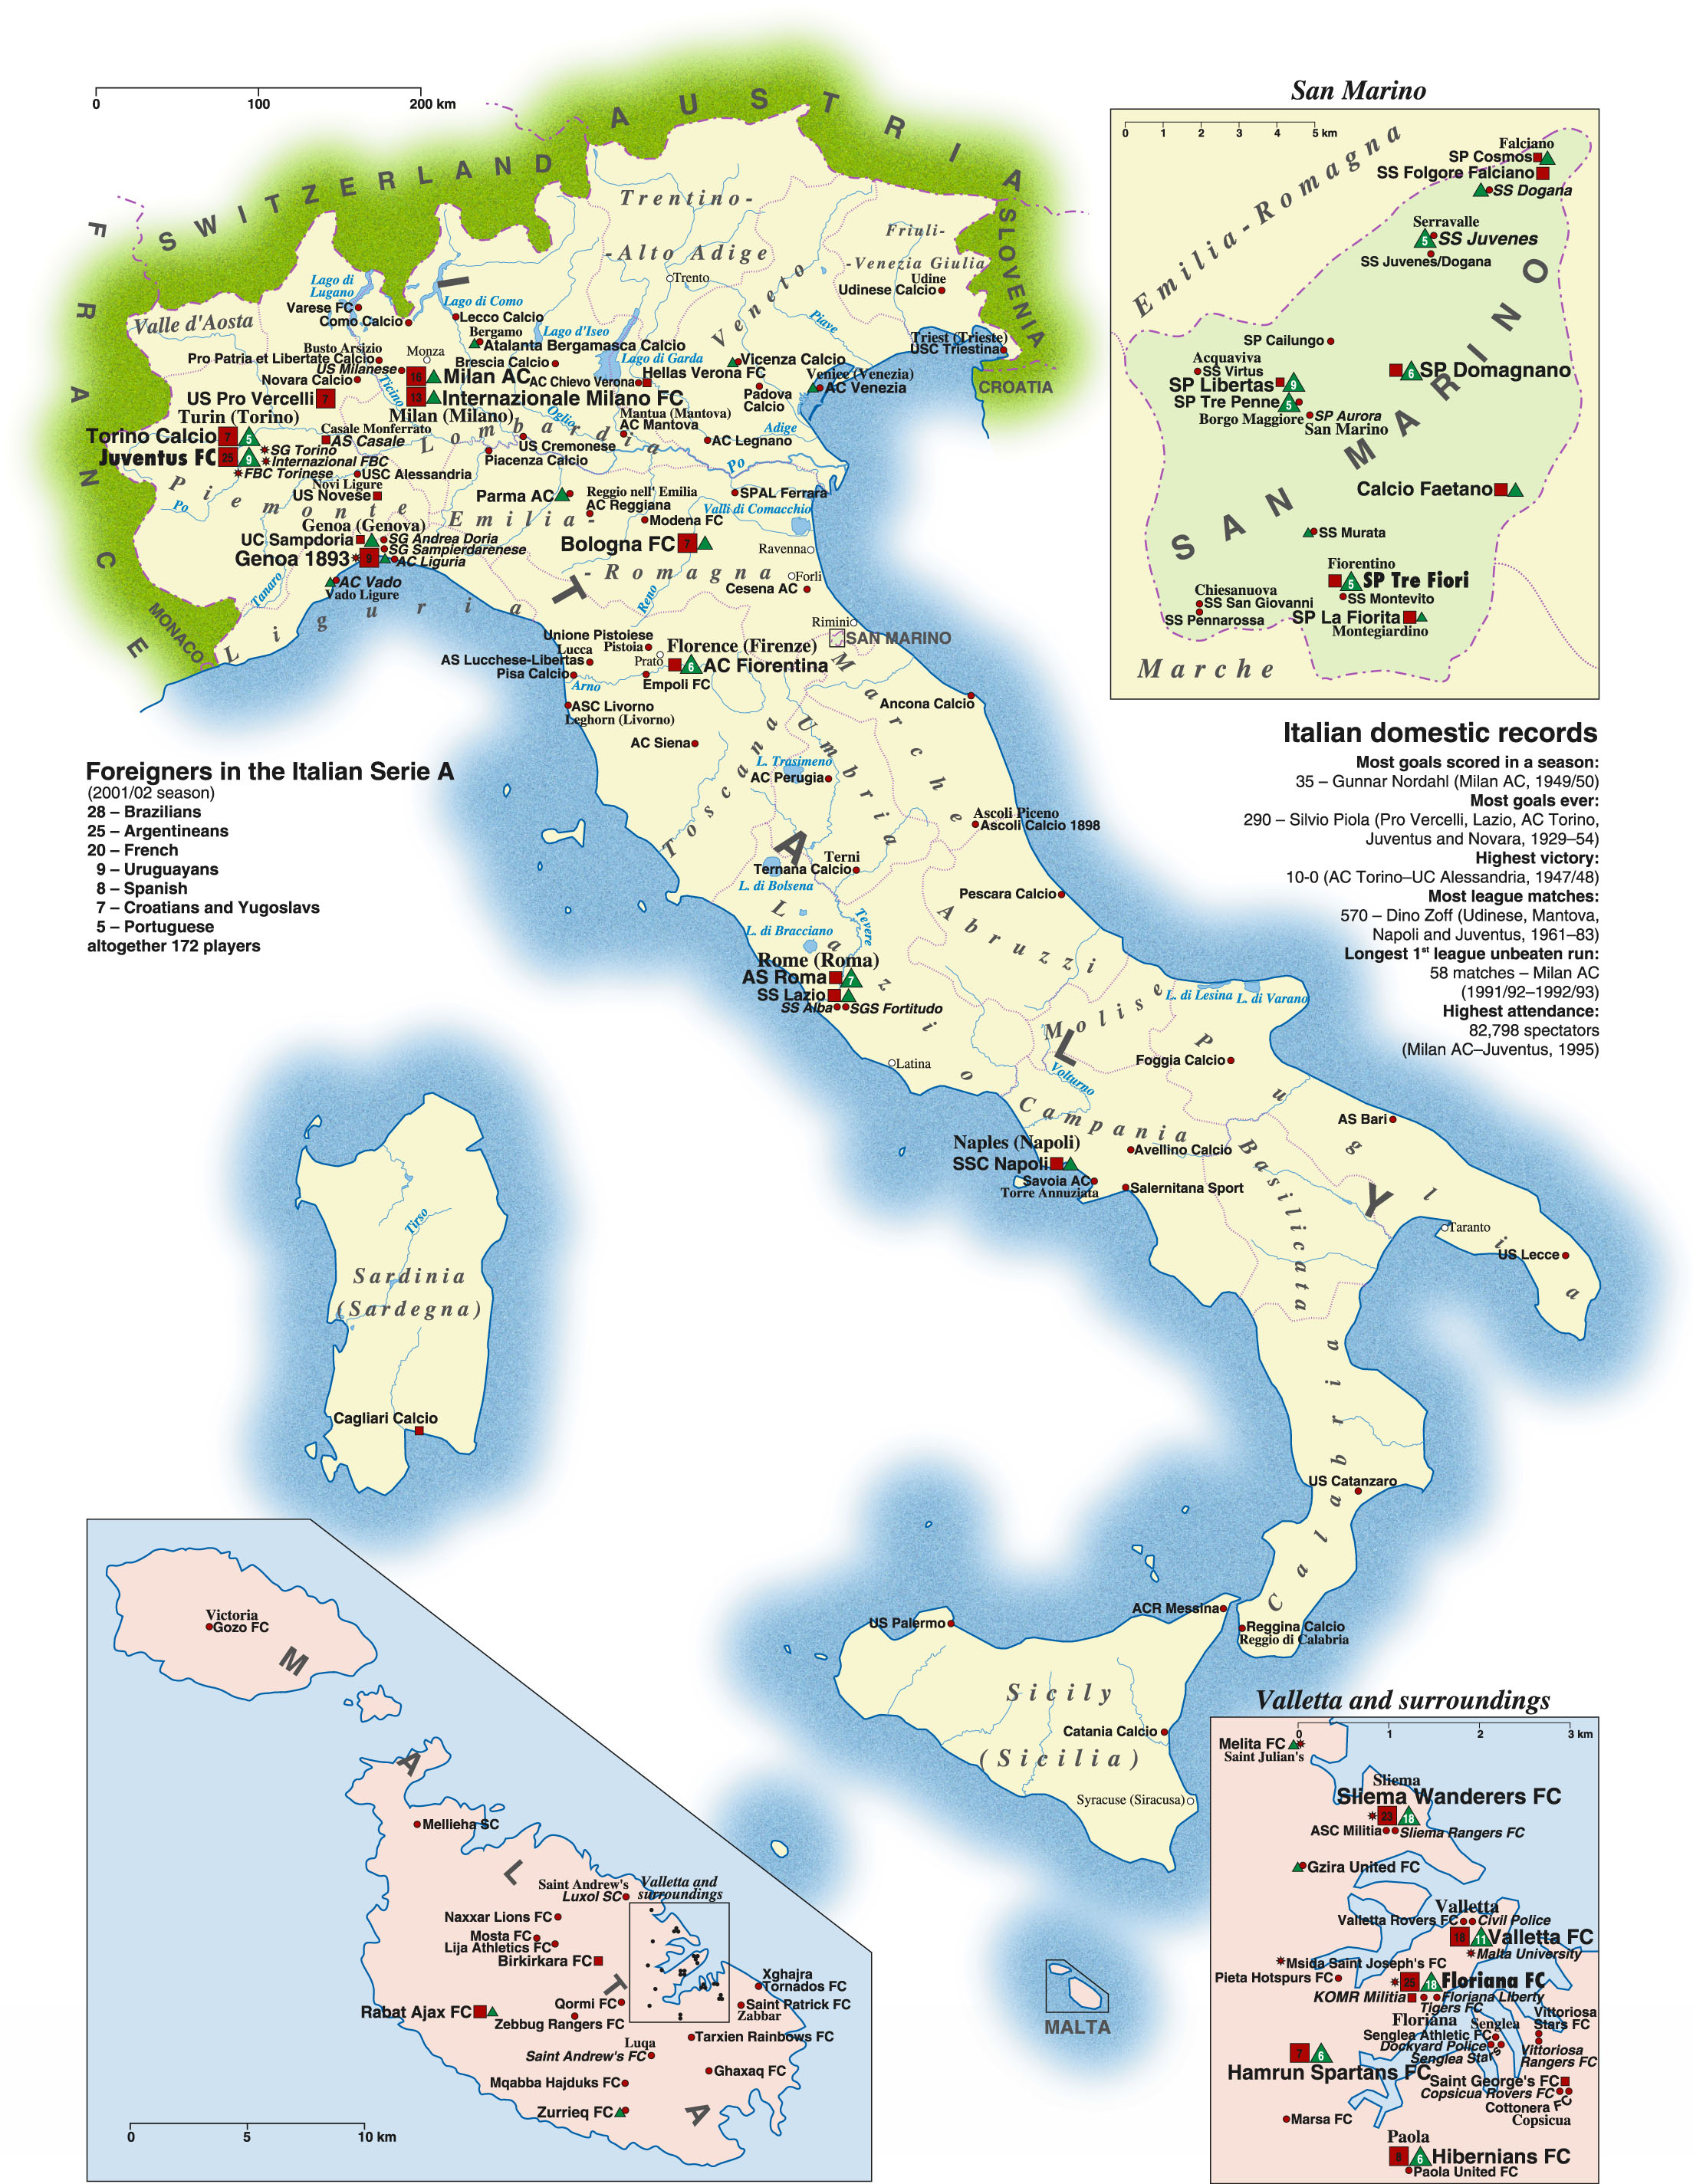 Whole map of Italy, San Marino, Malta